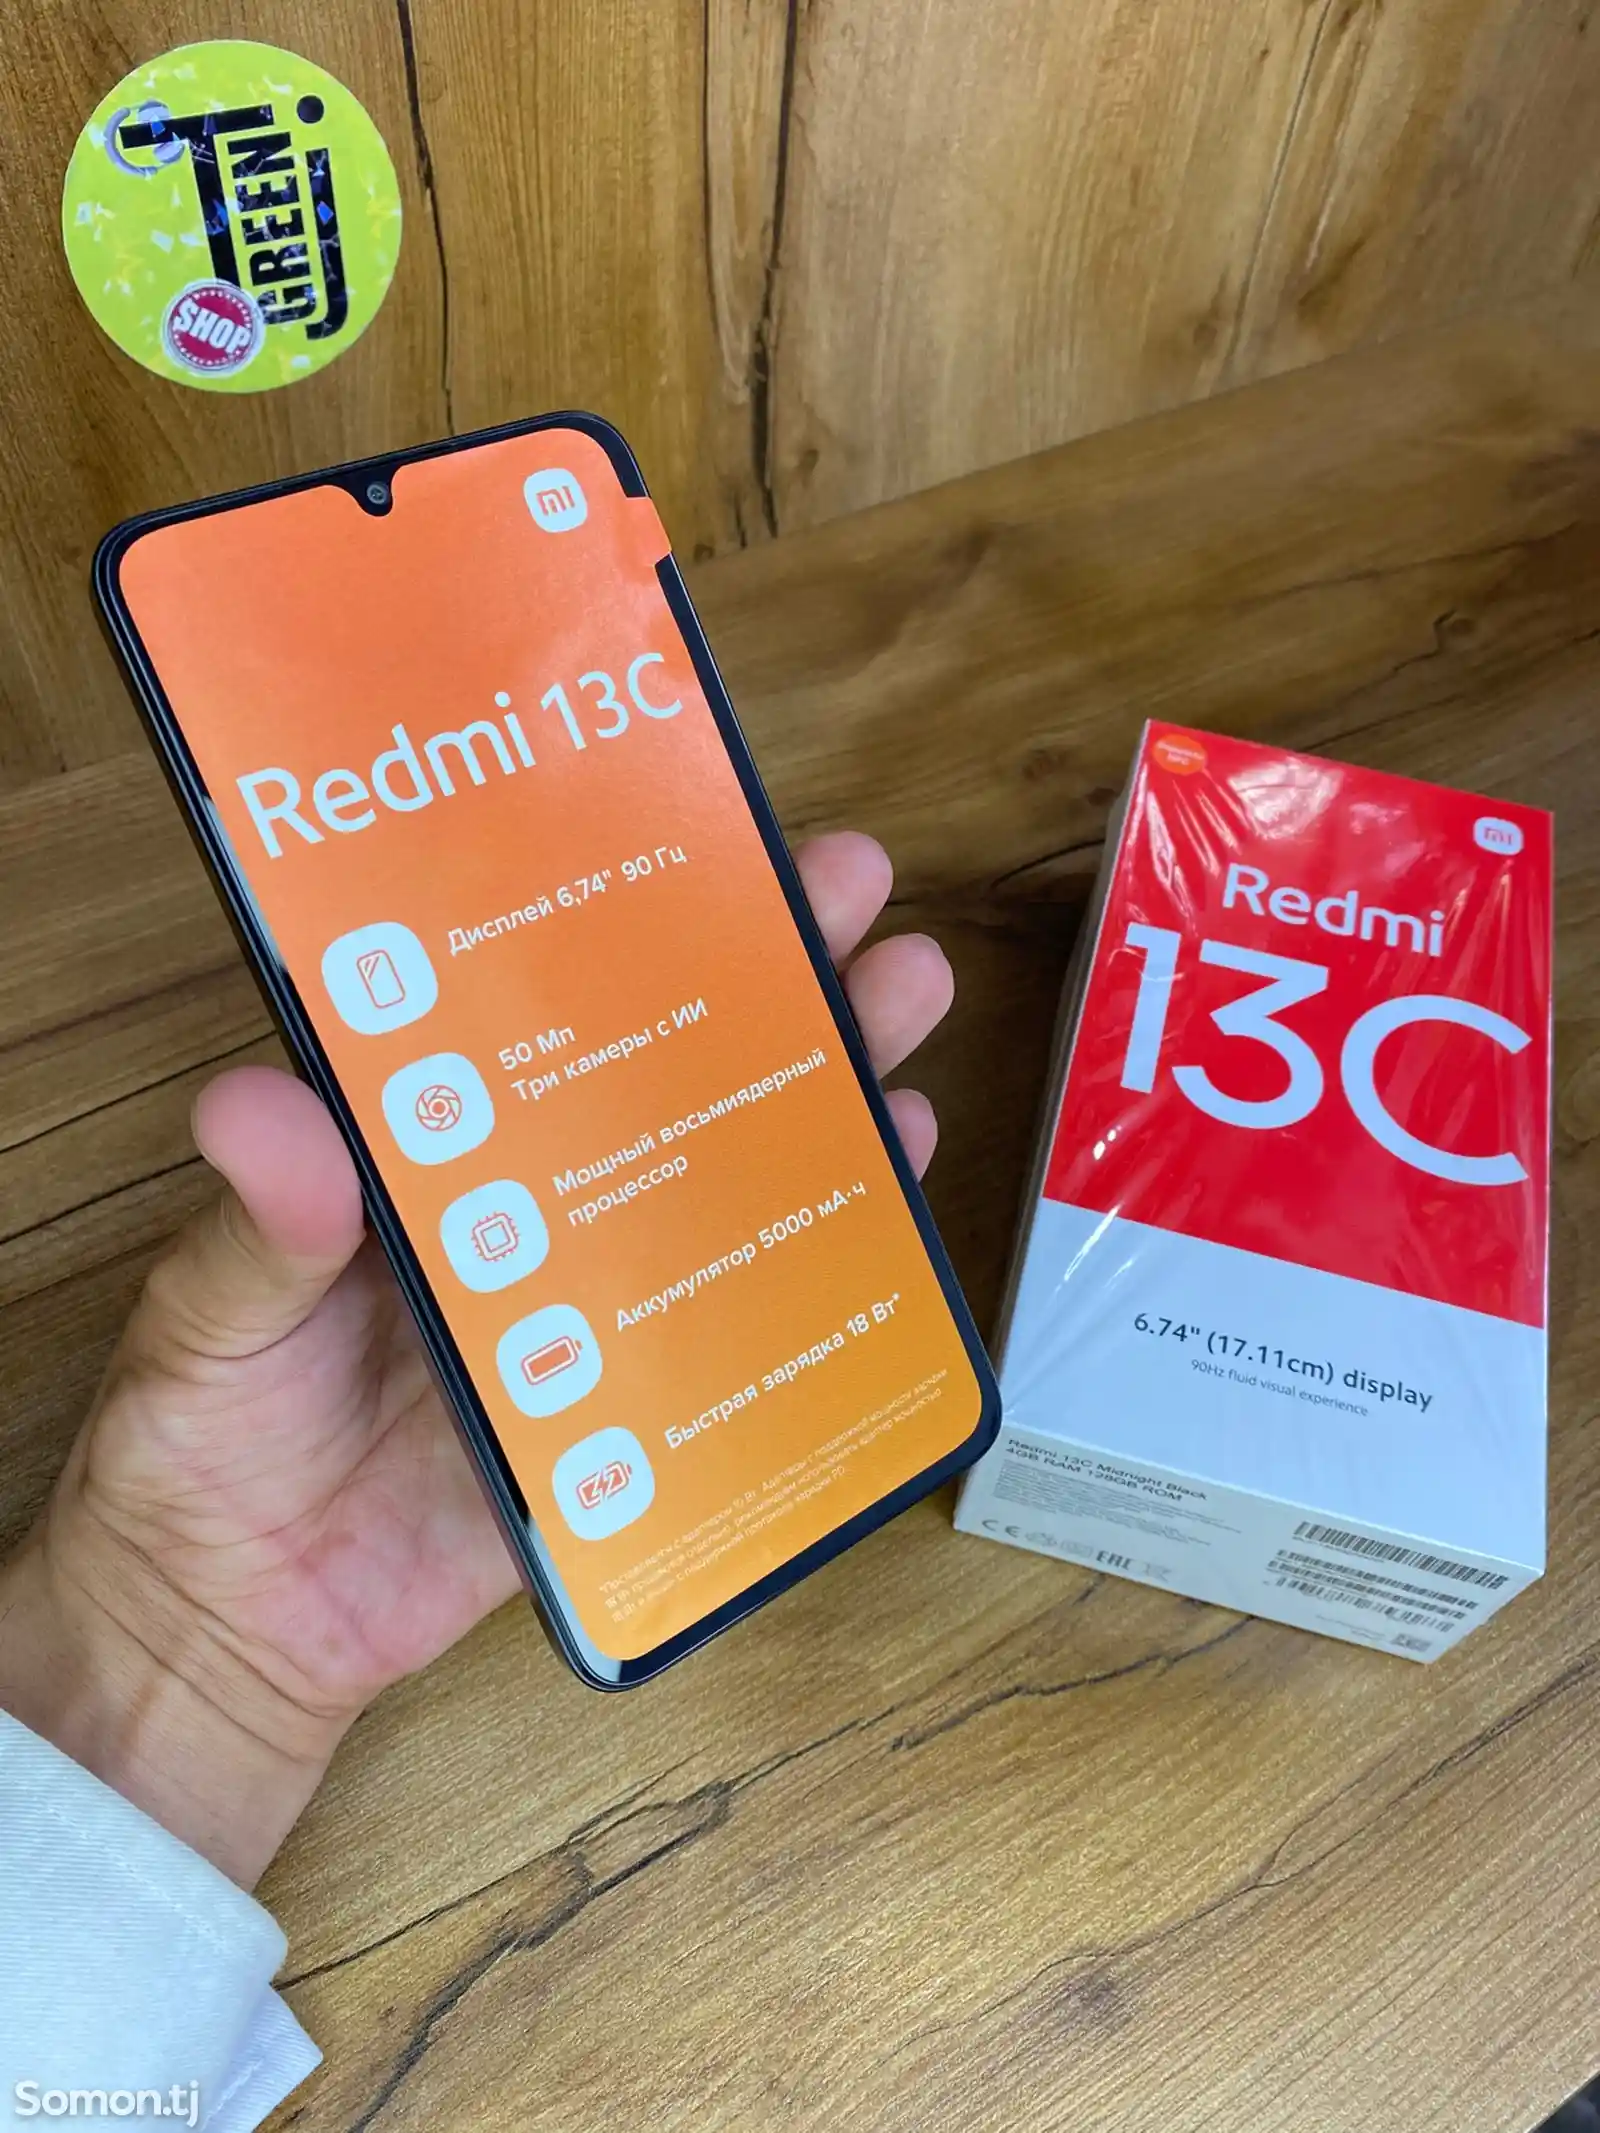 Xiaomi Redmi 13C-2